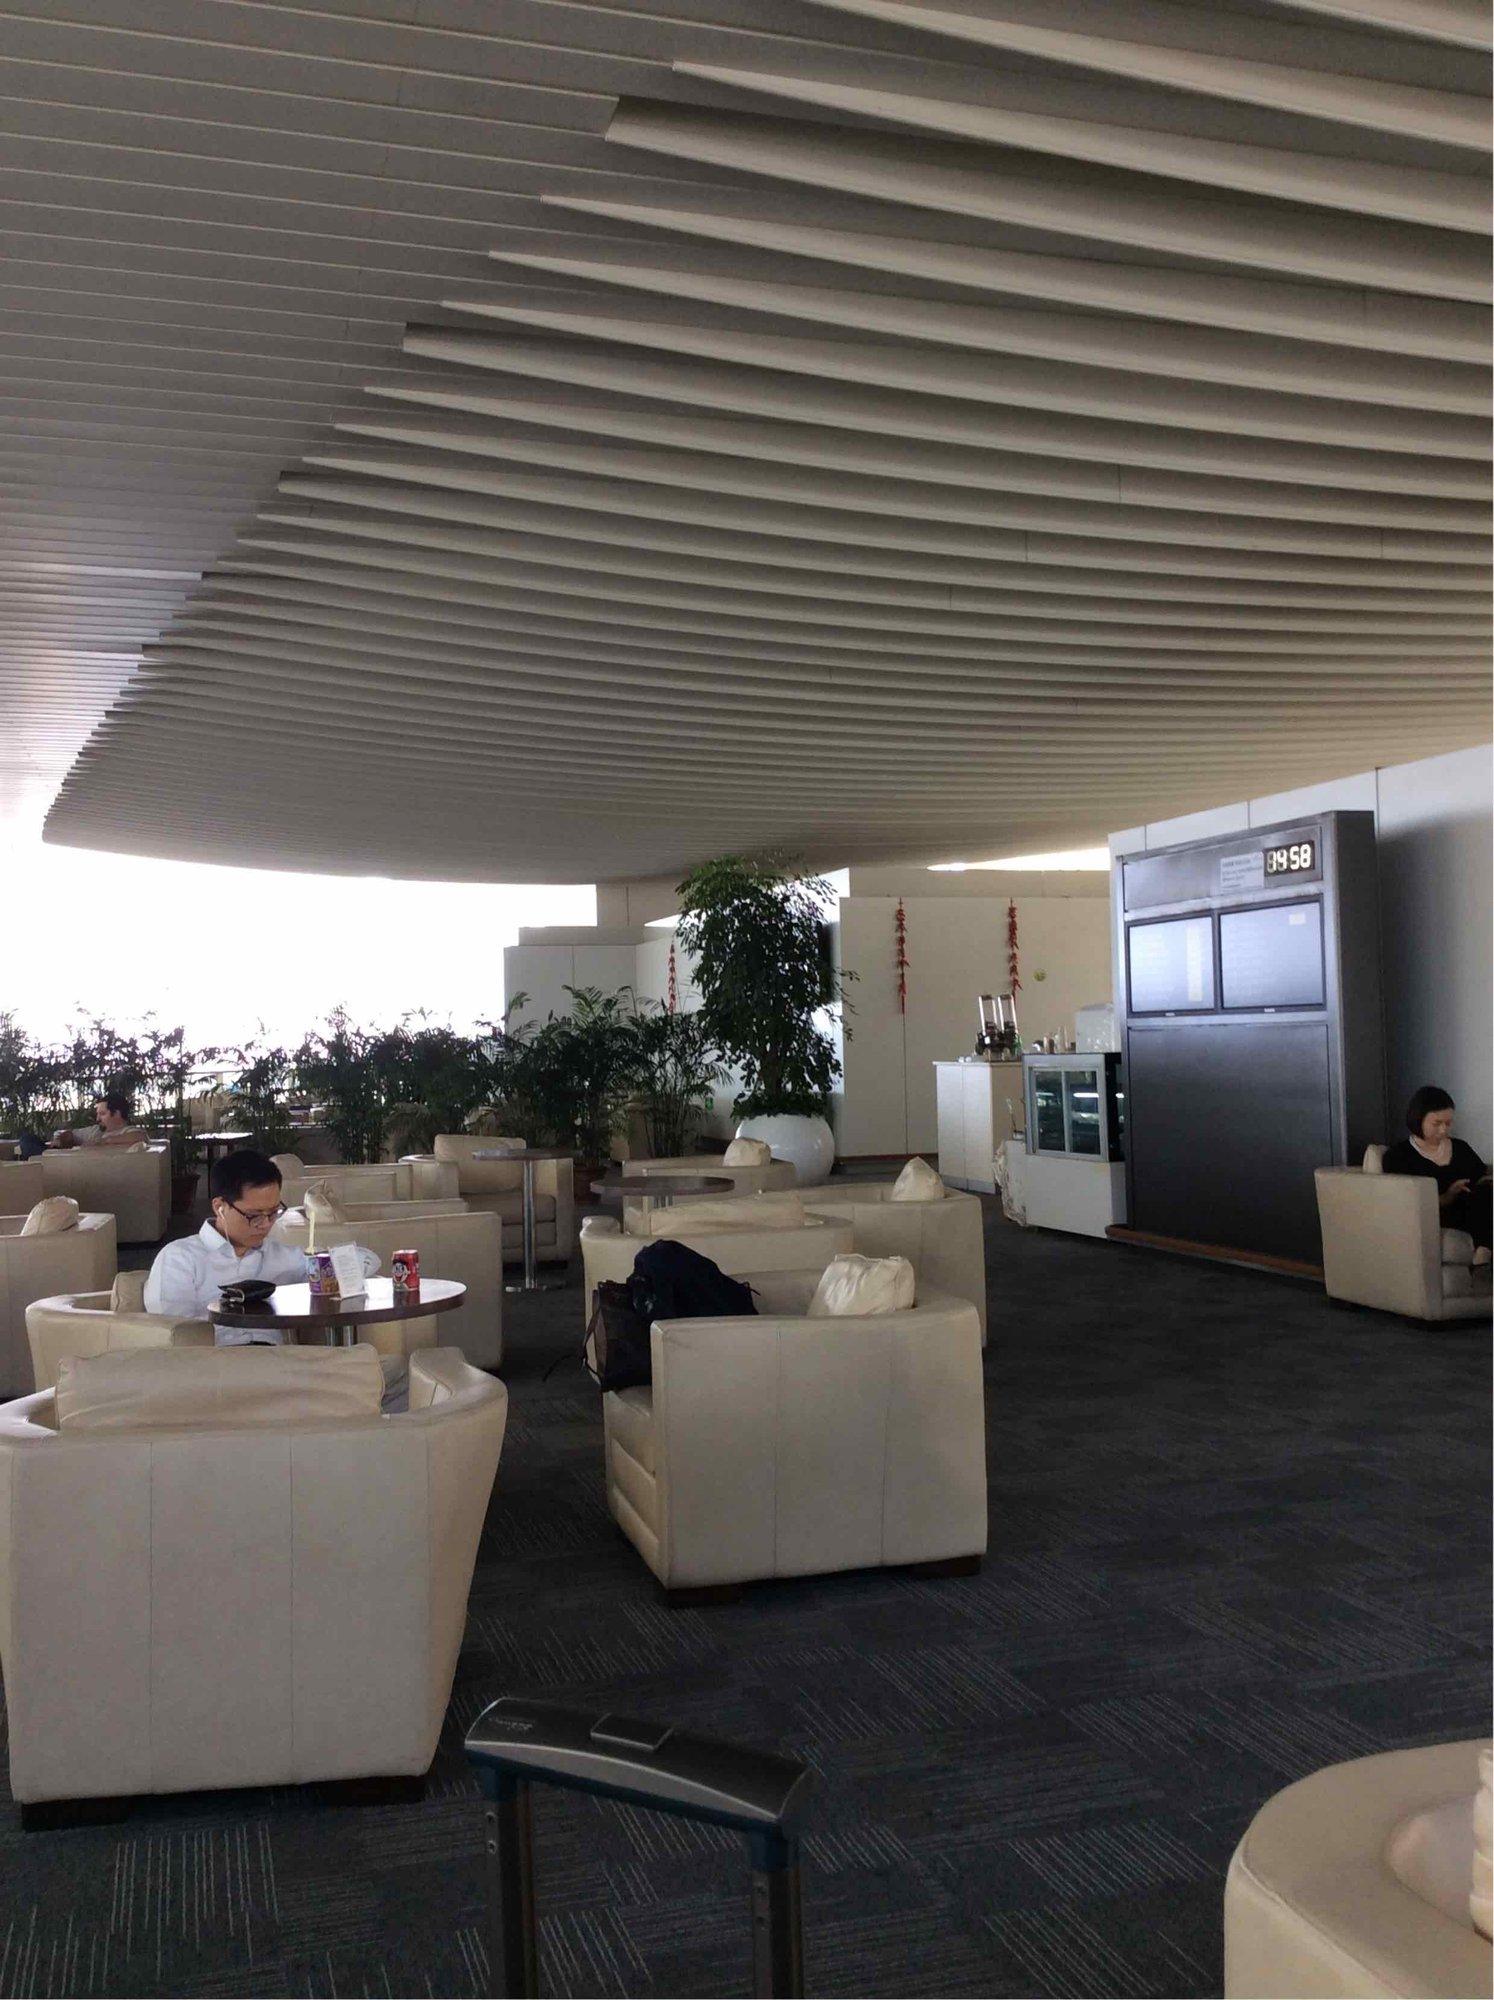 Hangzhou Xiaoshan Airport First Class Lounge image 1 of 8